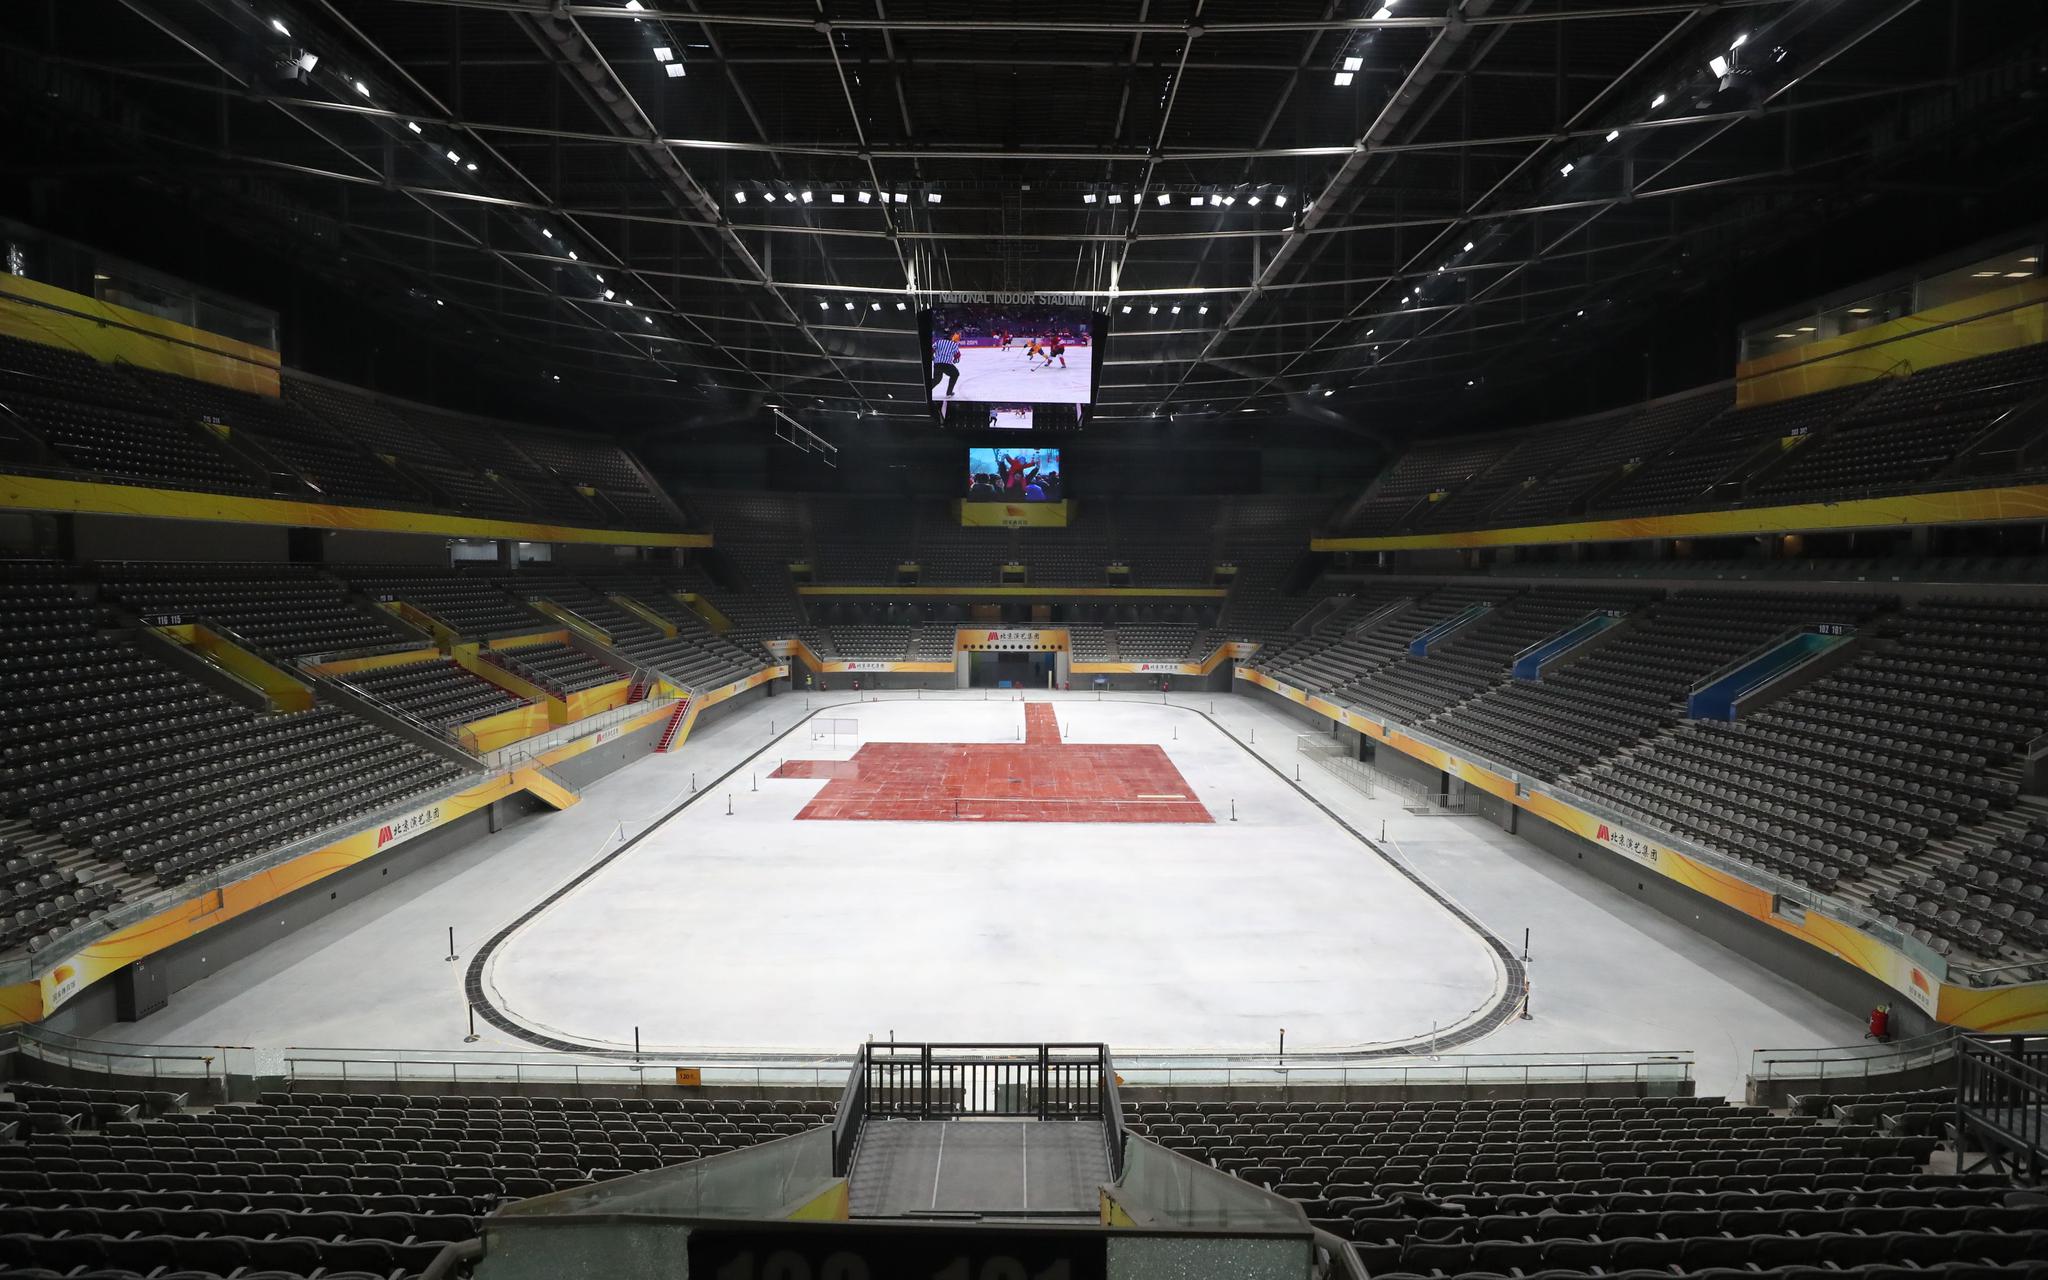 国家体育馆冰球比赛场地。北京市重大项目办供图